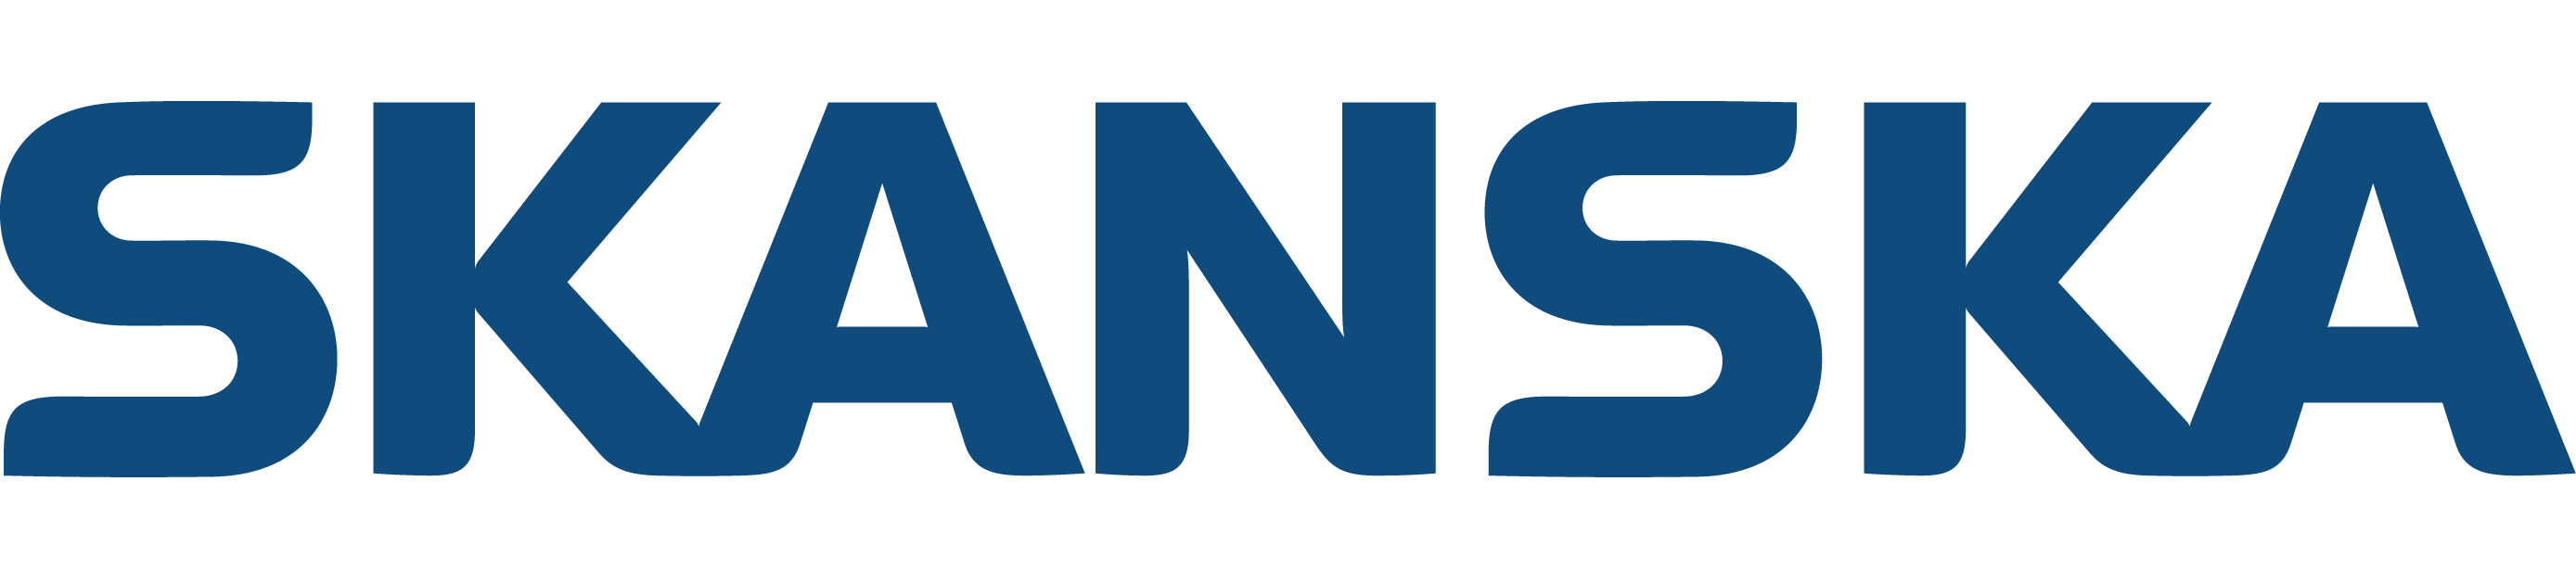 skanska-logo.png